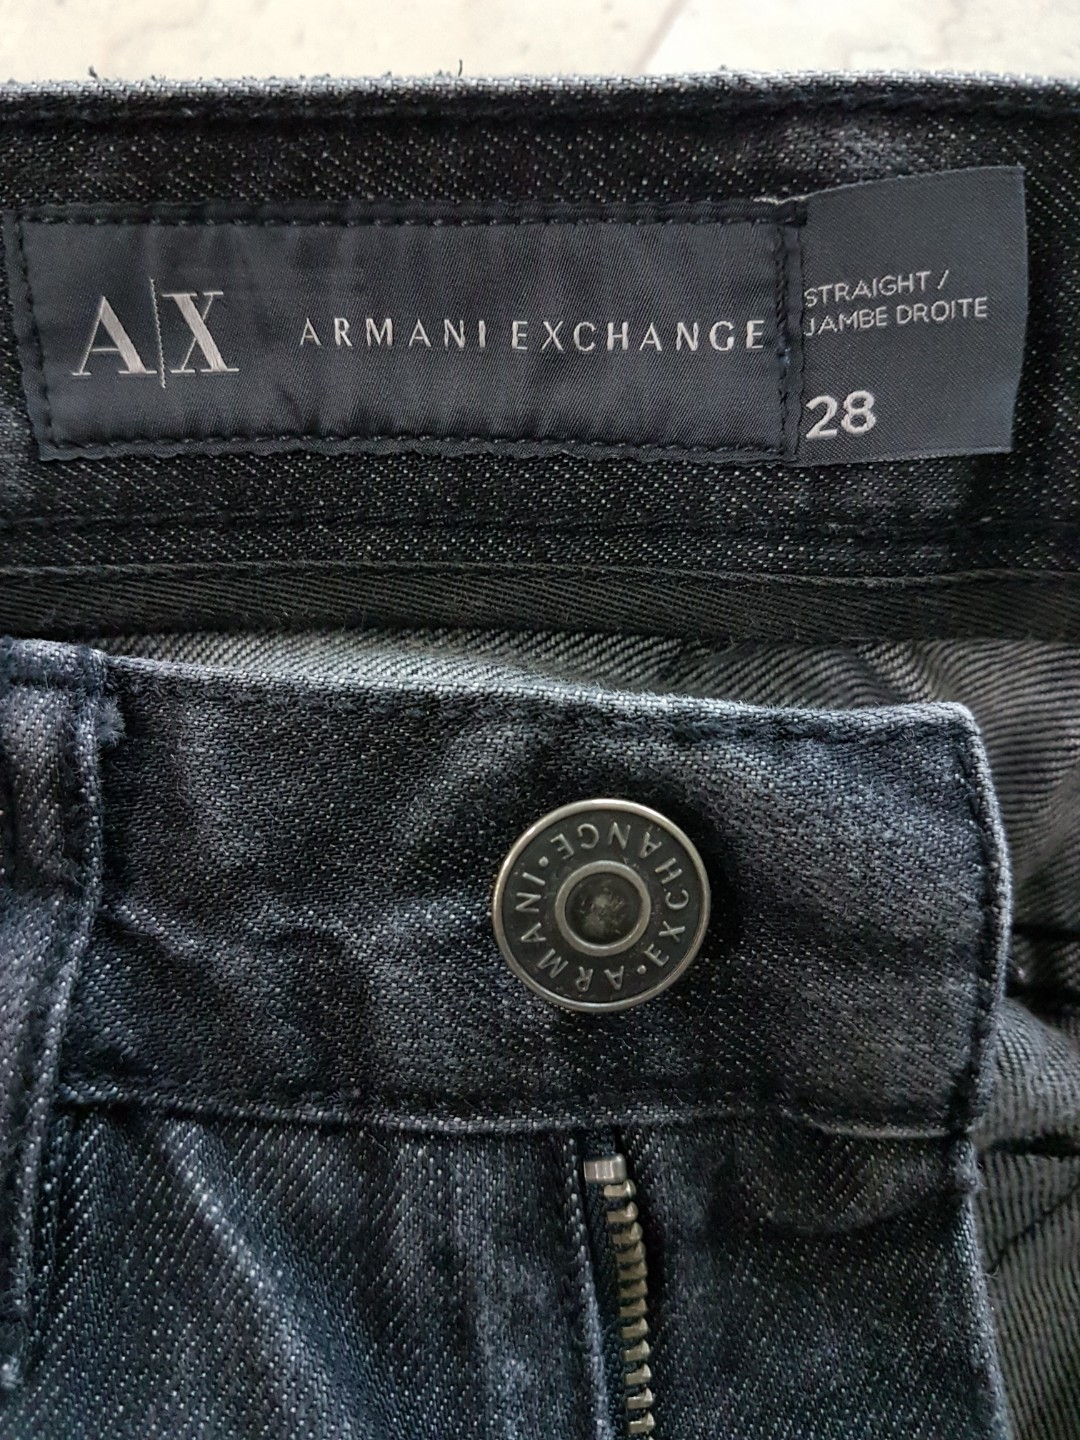 AX jeans for men/ladies, Men's Fashion 